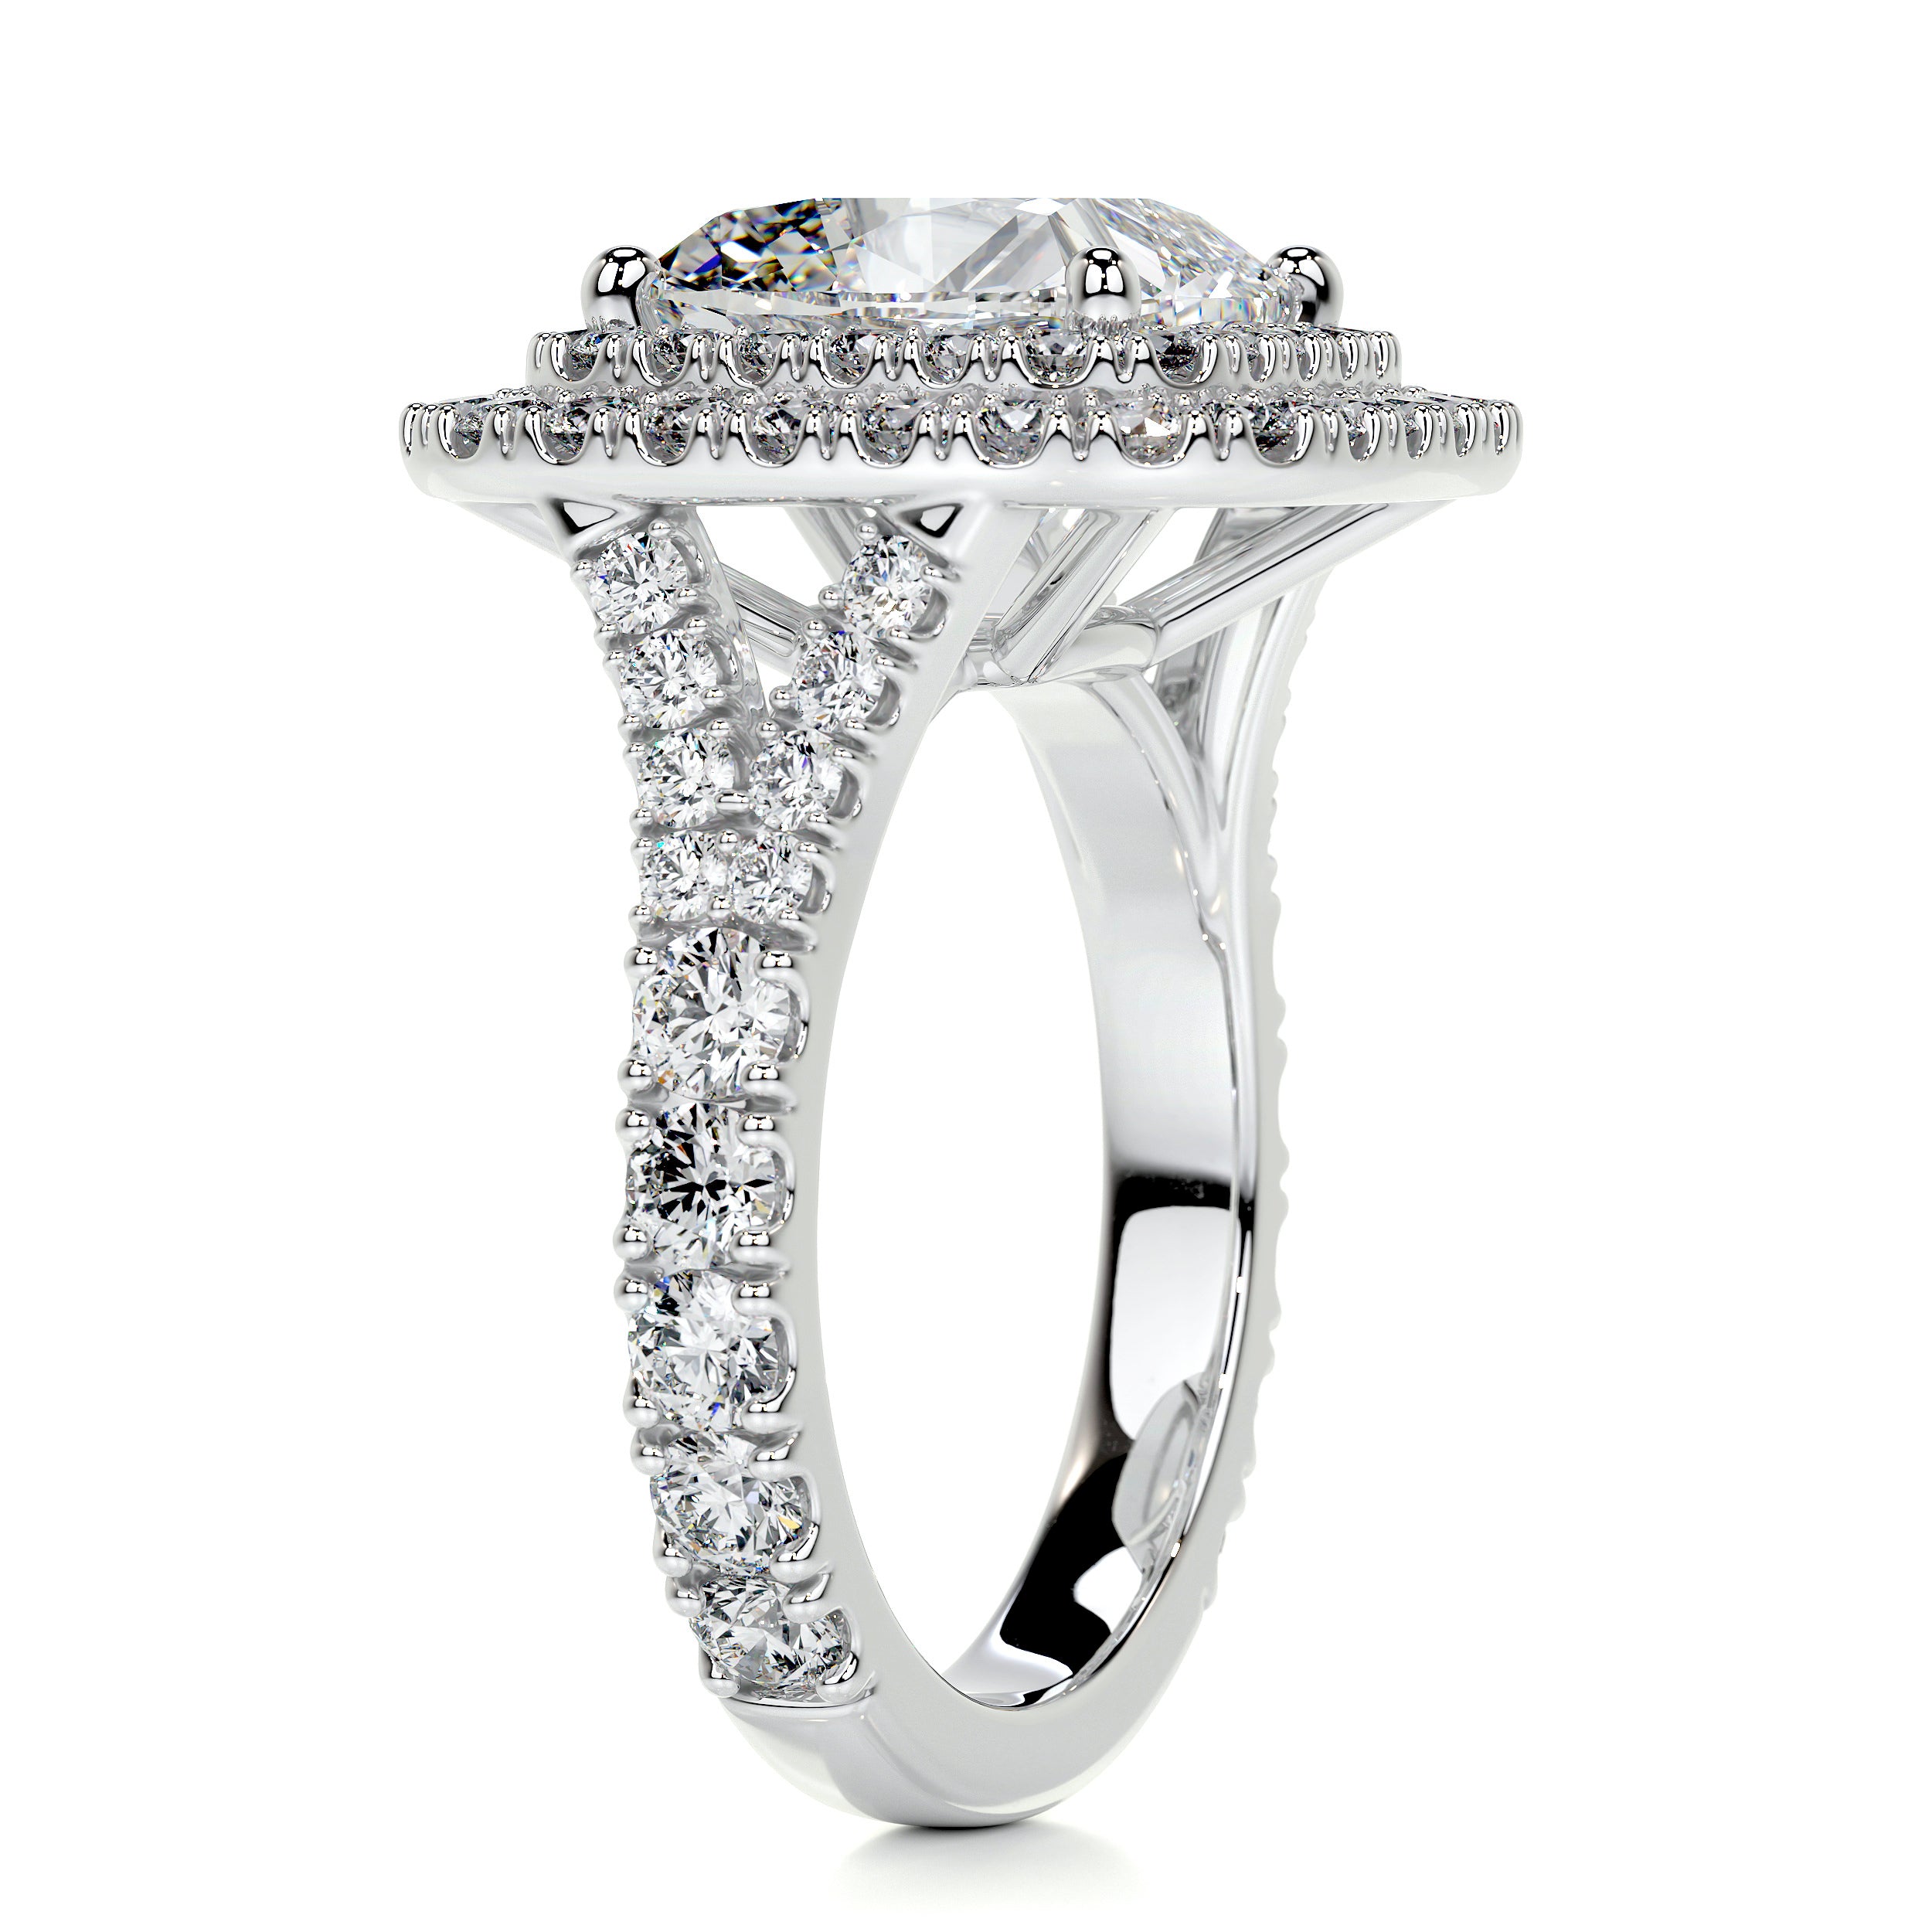 Marley Diamond Engagement Ring   (4 Carat) - 14K White Gold